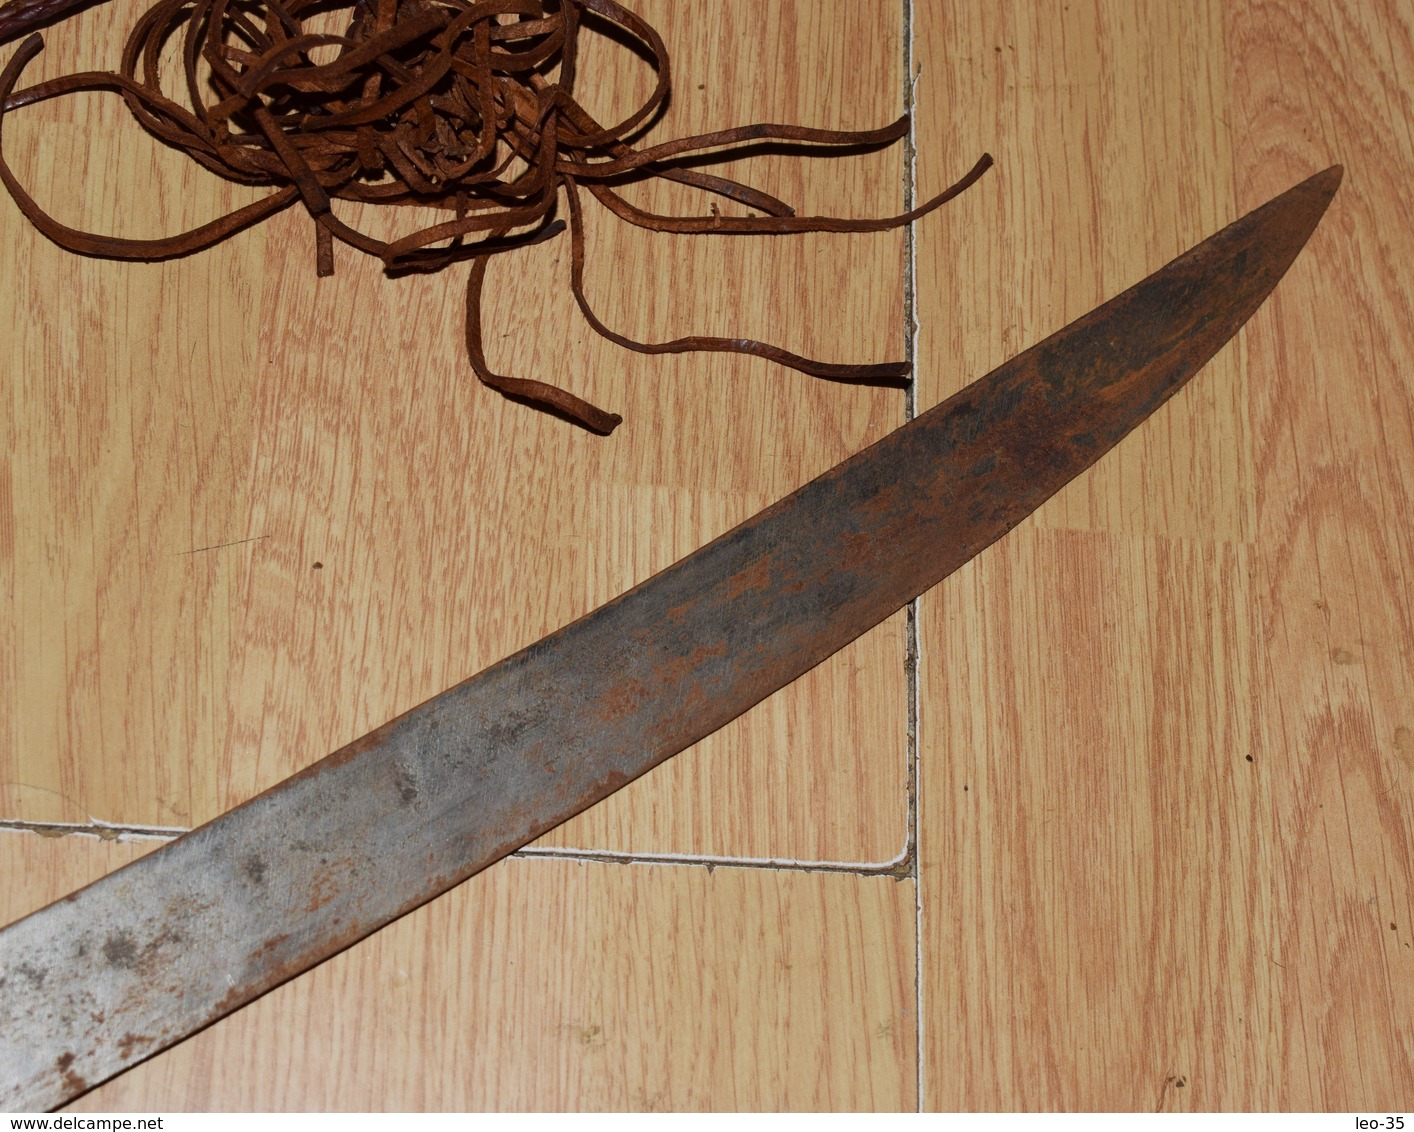 épée traditionnel Africaine - sabre africain origine inconnue a définir